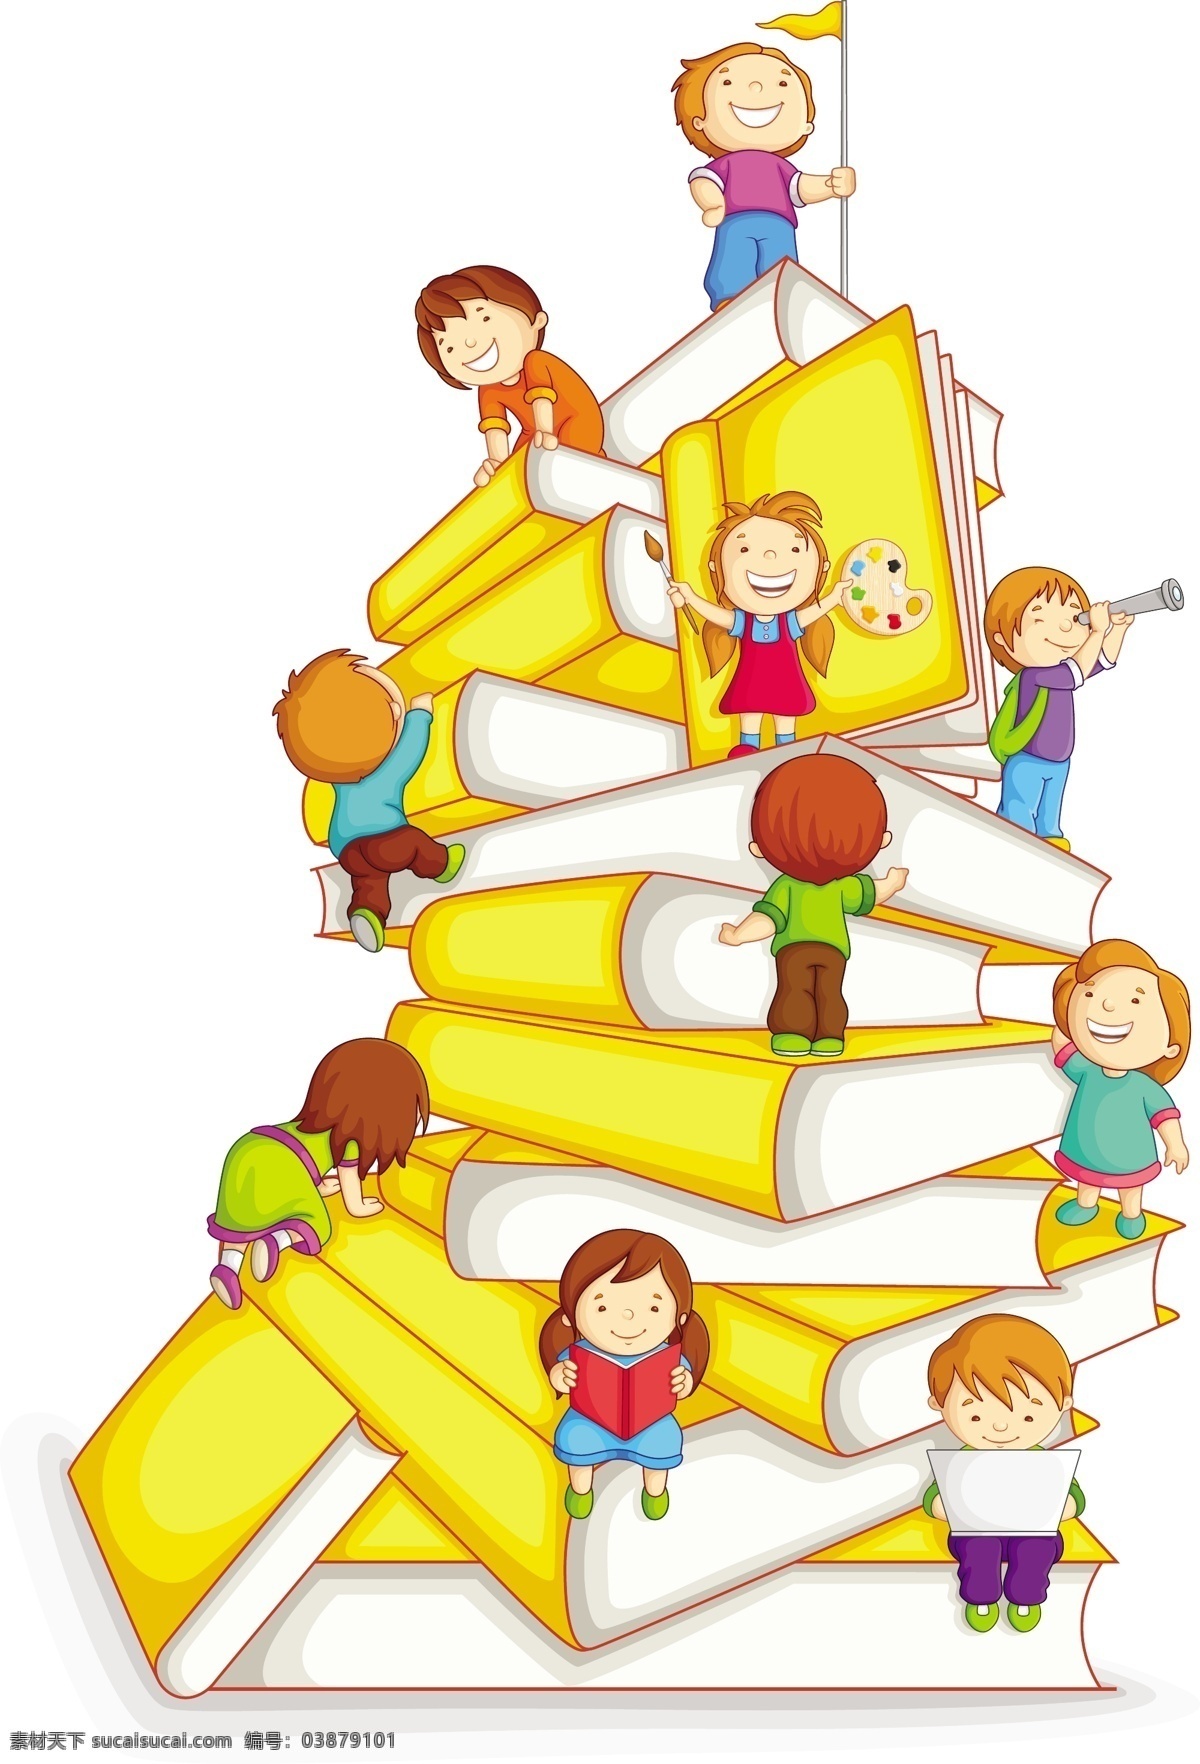 儿童教育 儿童读书 儿童读物 读书 学习 阅读 教育 书本 图书 education 图书logo 卡通设计